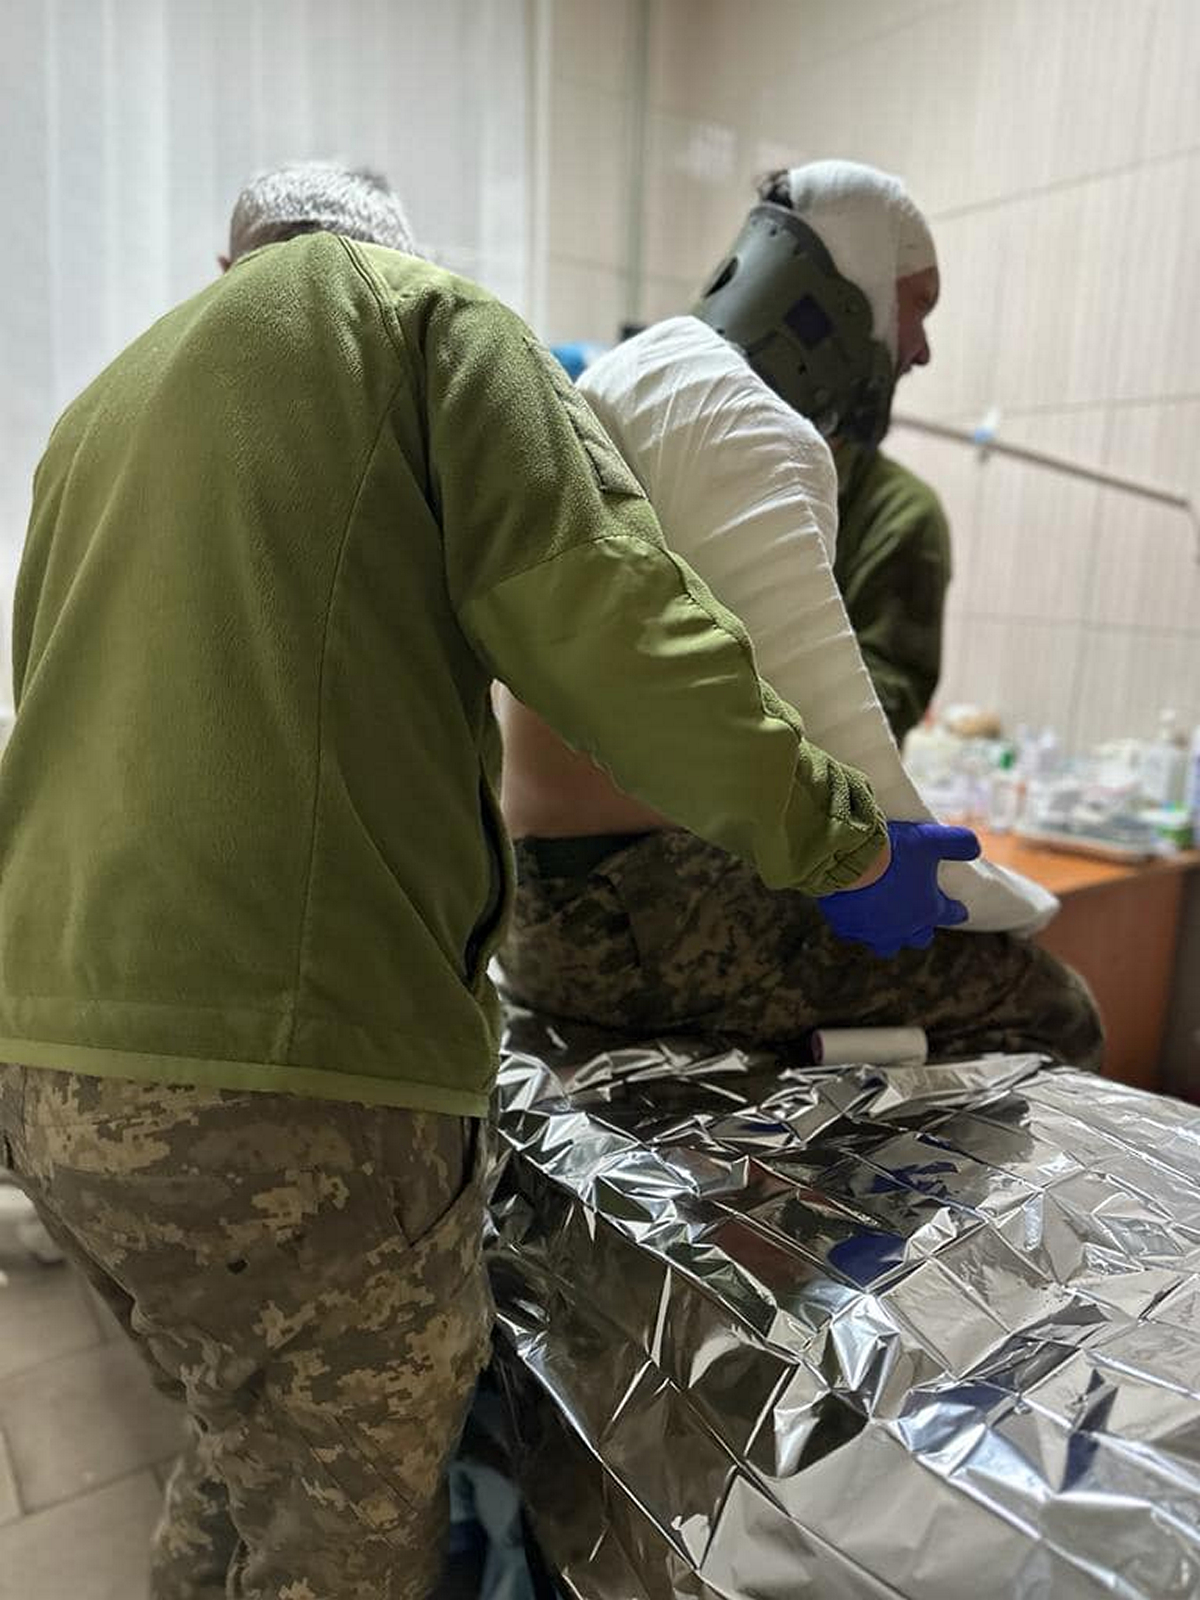 Рідна для нікопольців 25-та бригада показала роботу своїх янголів – військових медиків